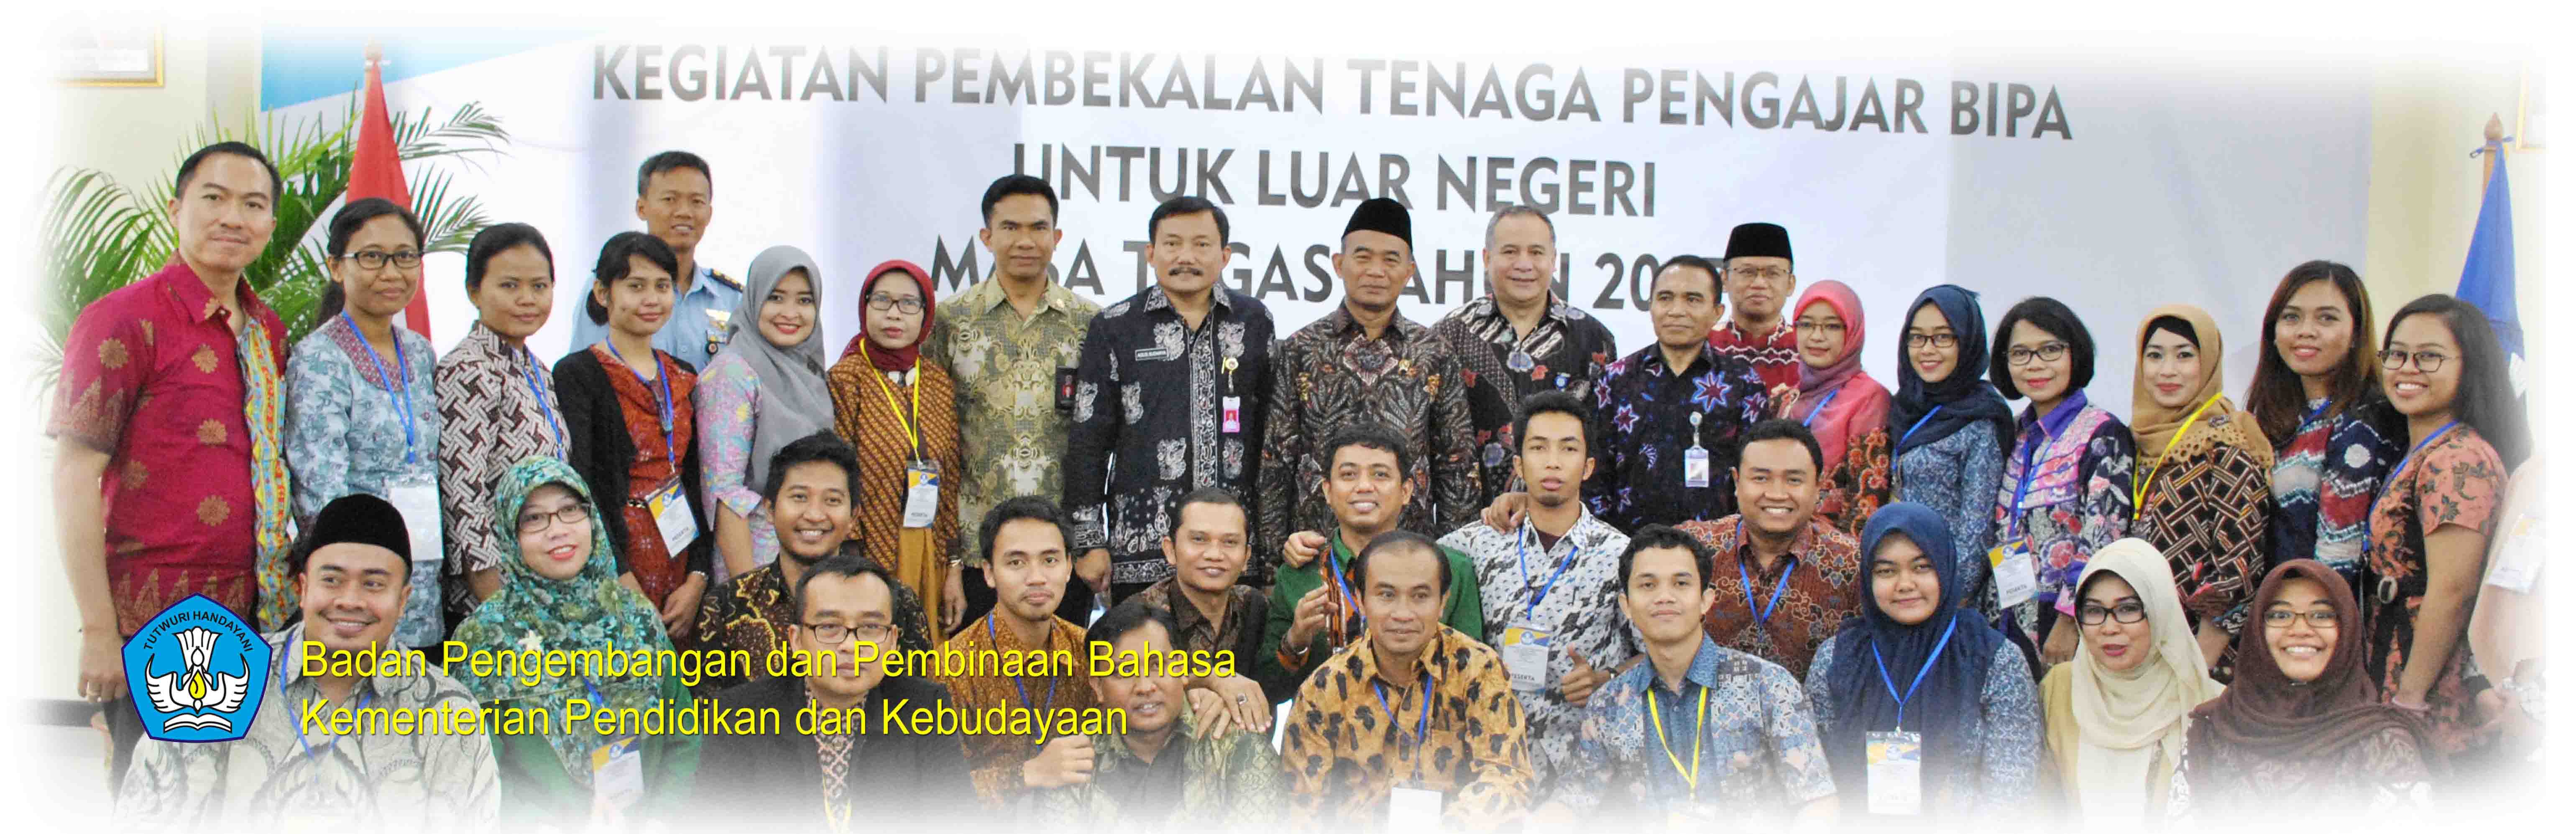 Tebarkan BIPA, Jadikan Bahasa Bersama agar Tenaga Kerja Asing Berbahasa Indonesia